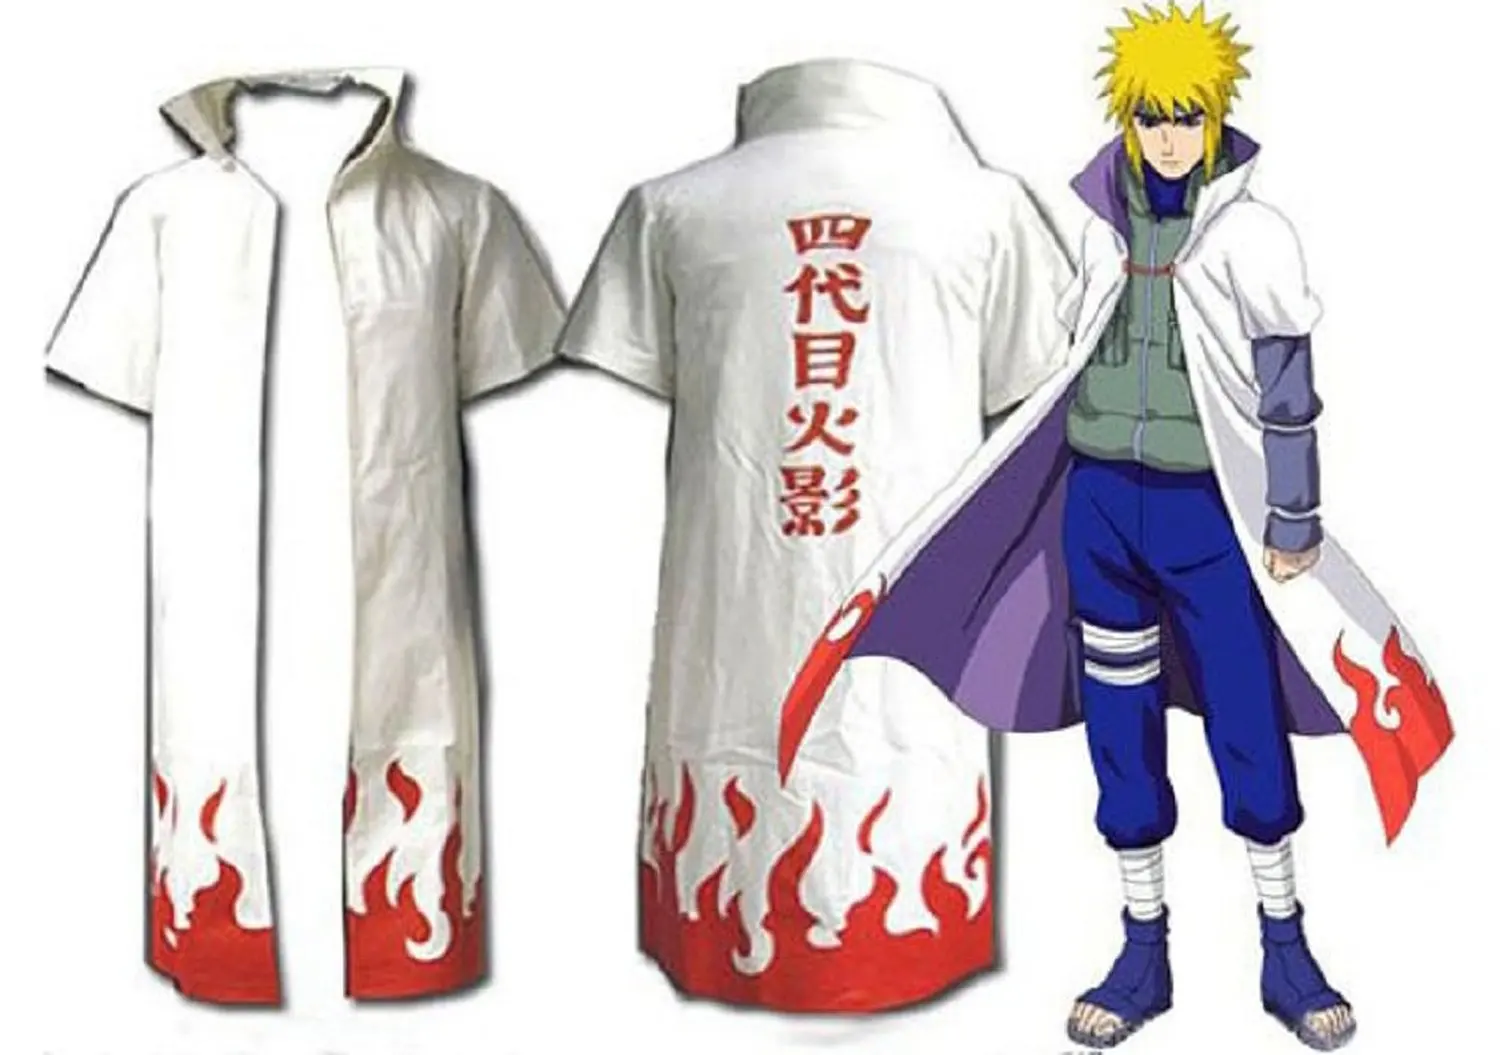 Naruto 4th Yondaime Hokage Cosplay Costume Cloak.